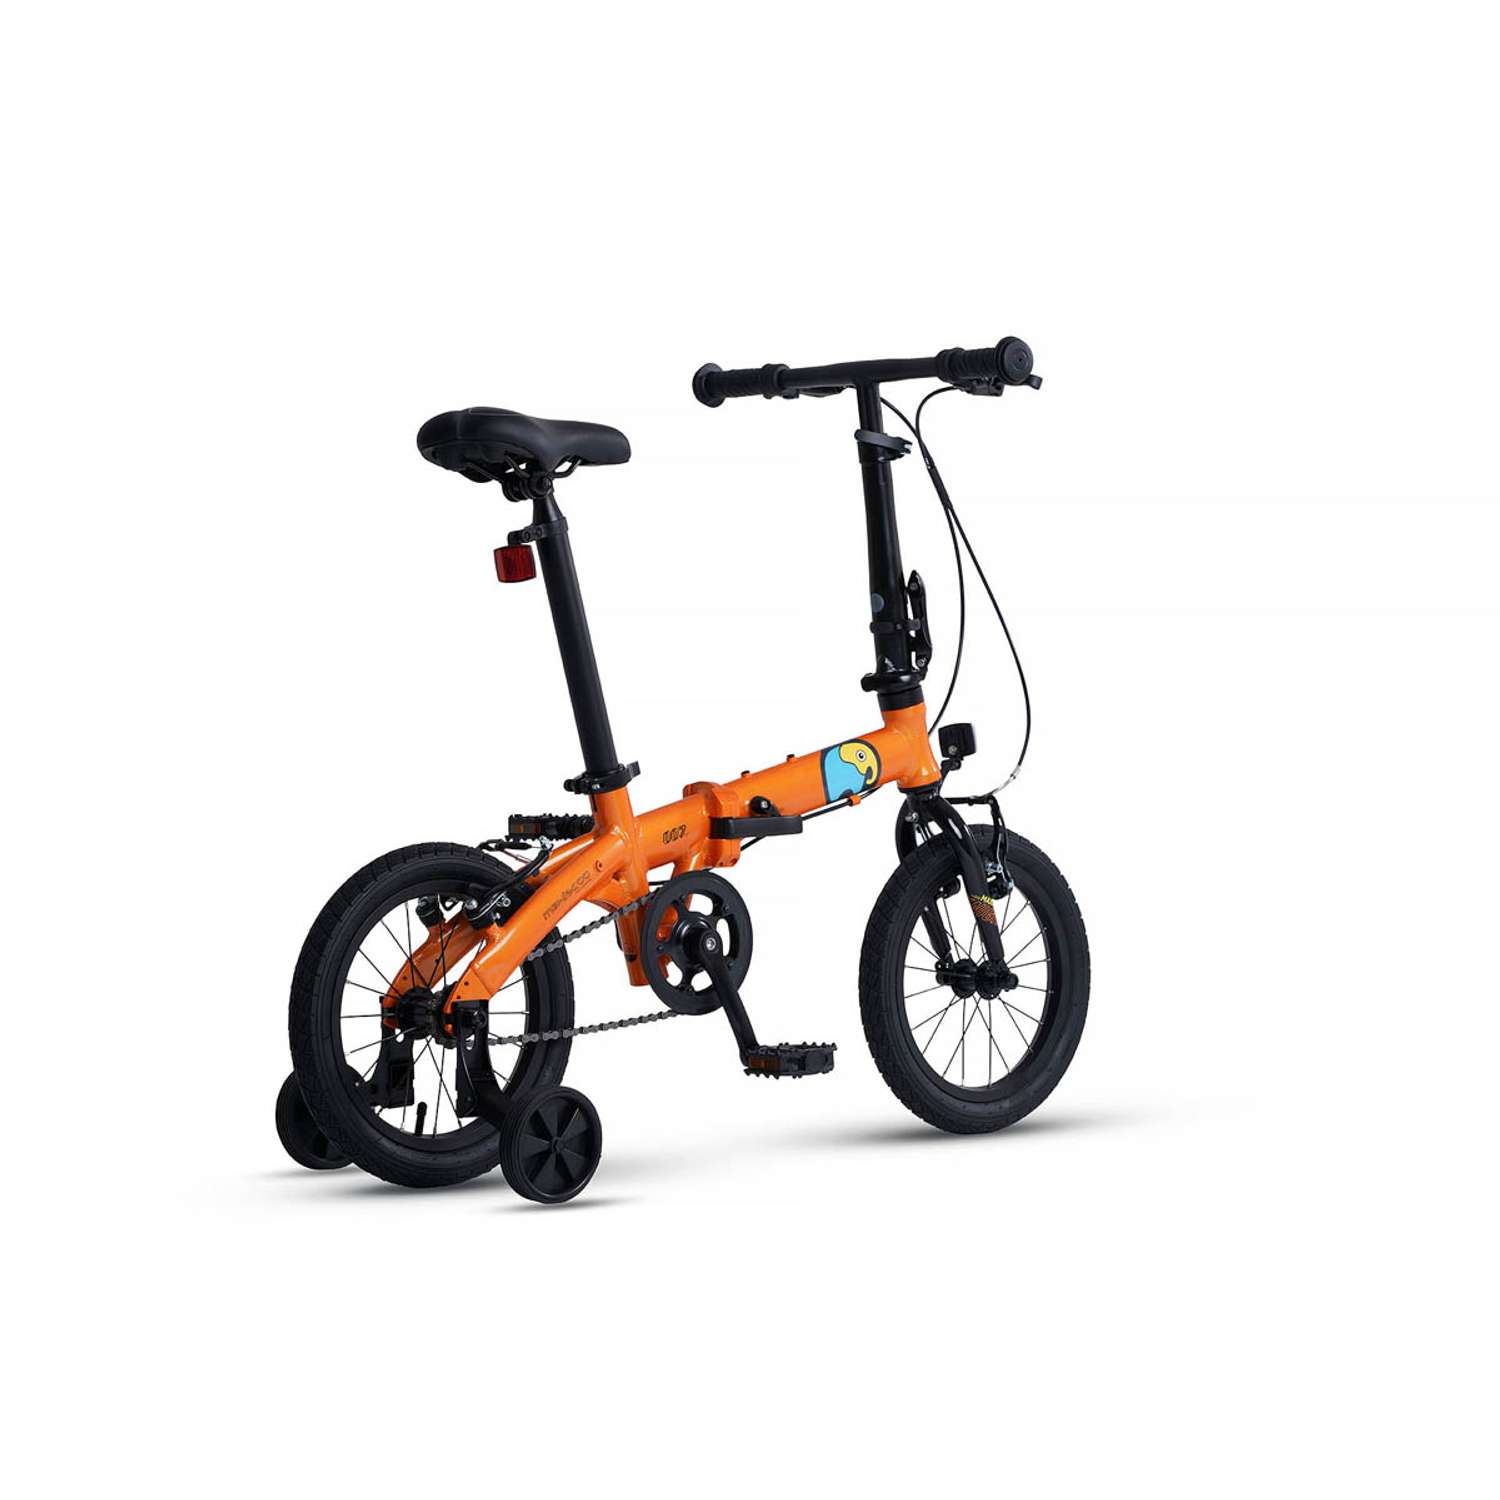 Велосипед Детский Складной Maxiscoo S007 стандарт 14 оранжевый - фото 4